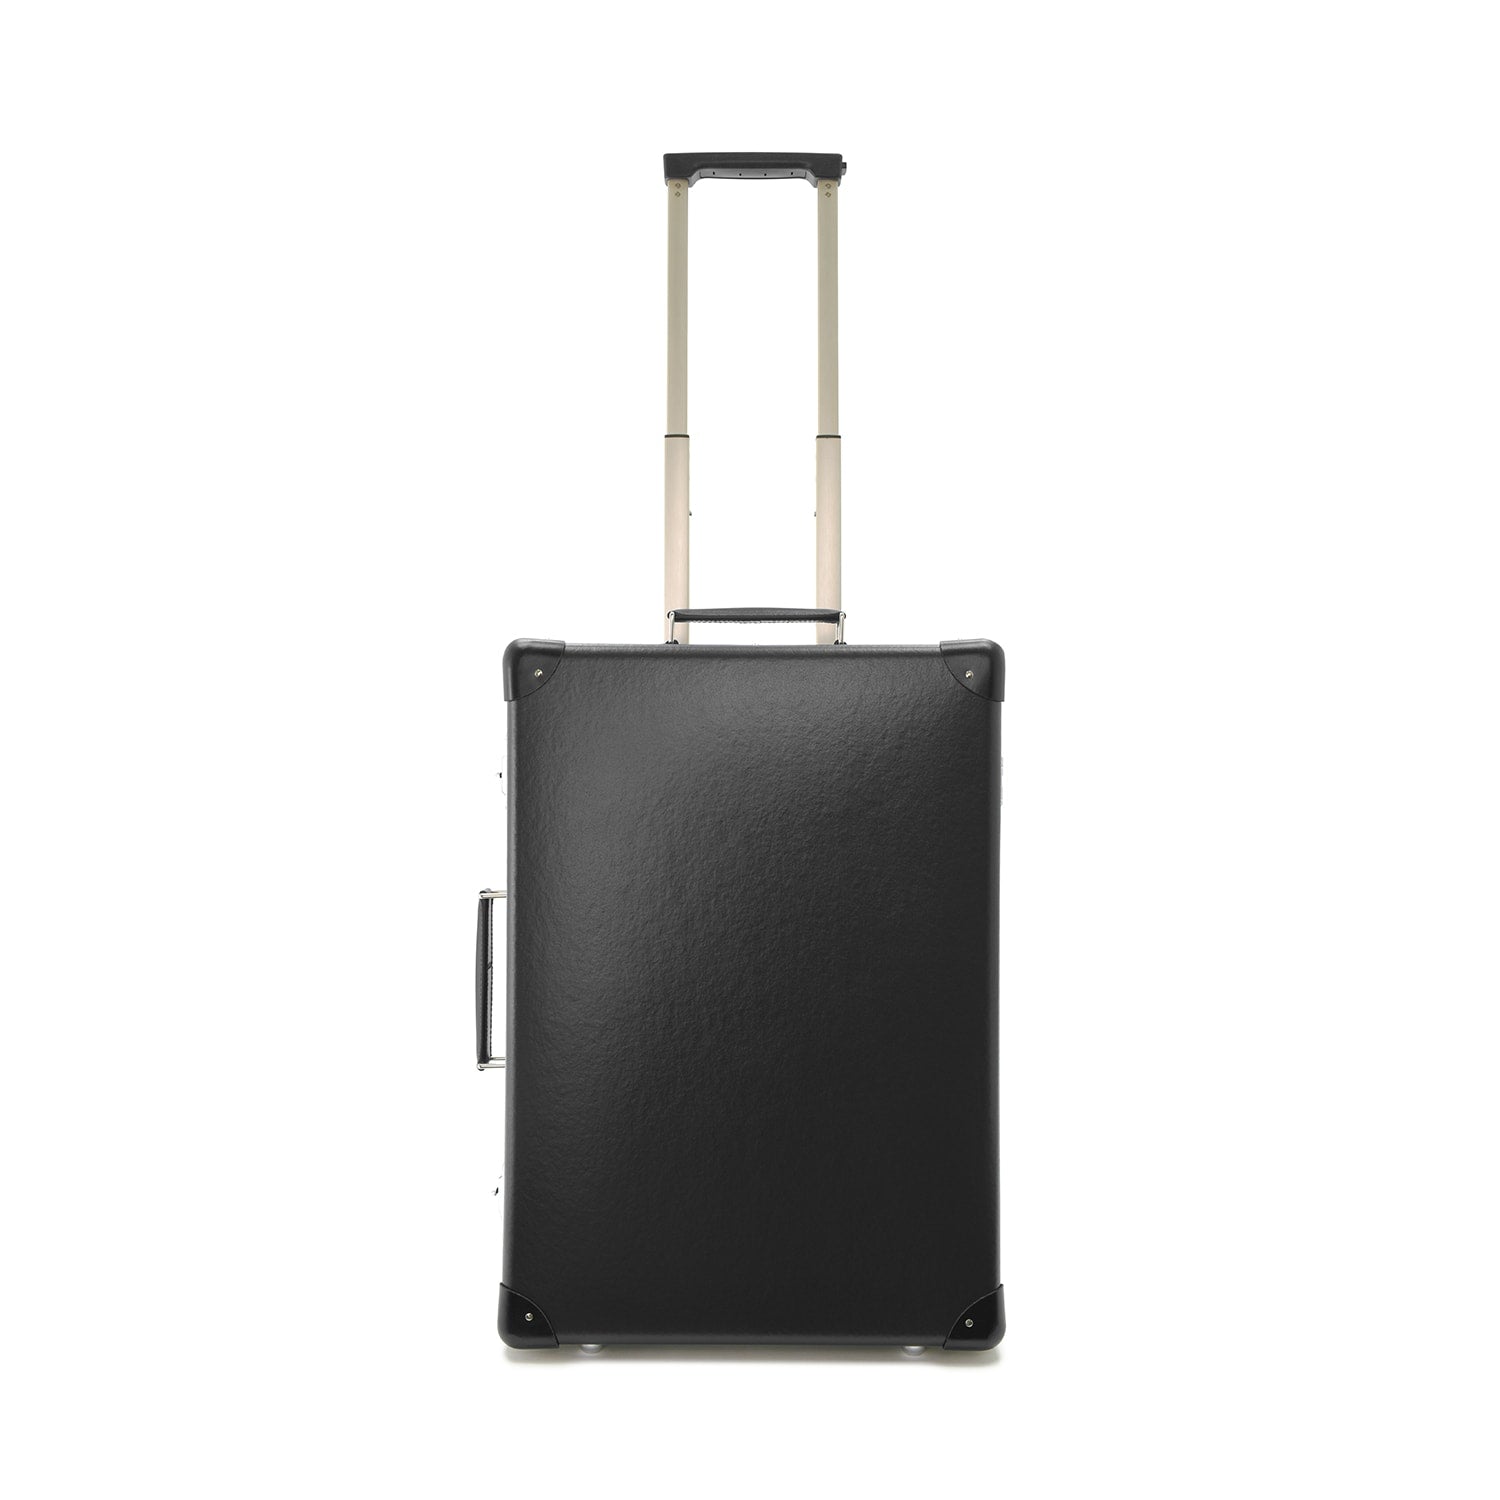 カラーブラックグローブトロッター オリジナル スーツケース/アタッシュ/キャリー/トロリー